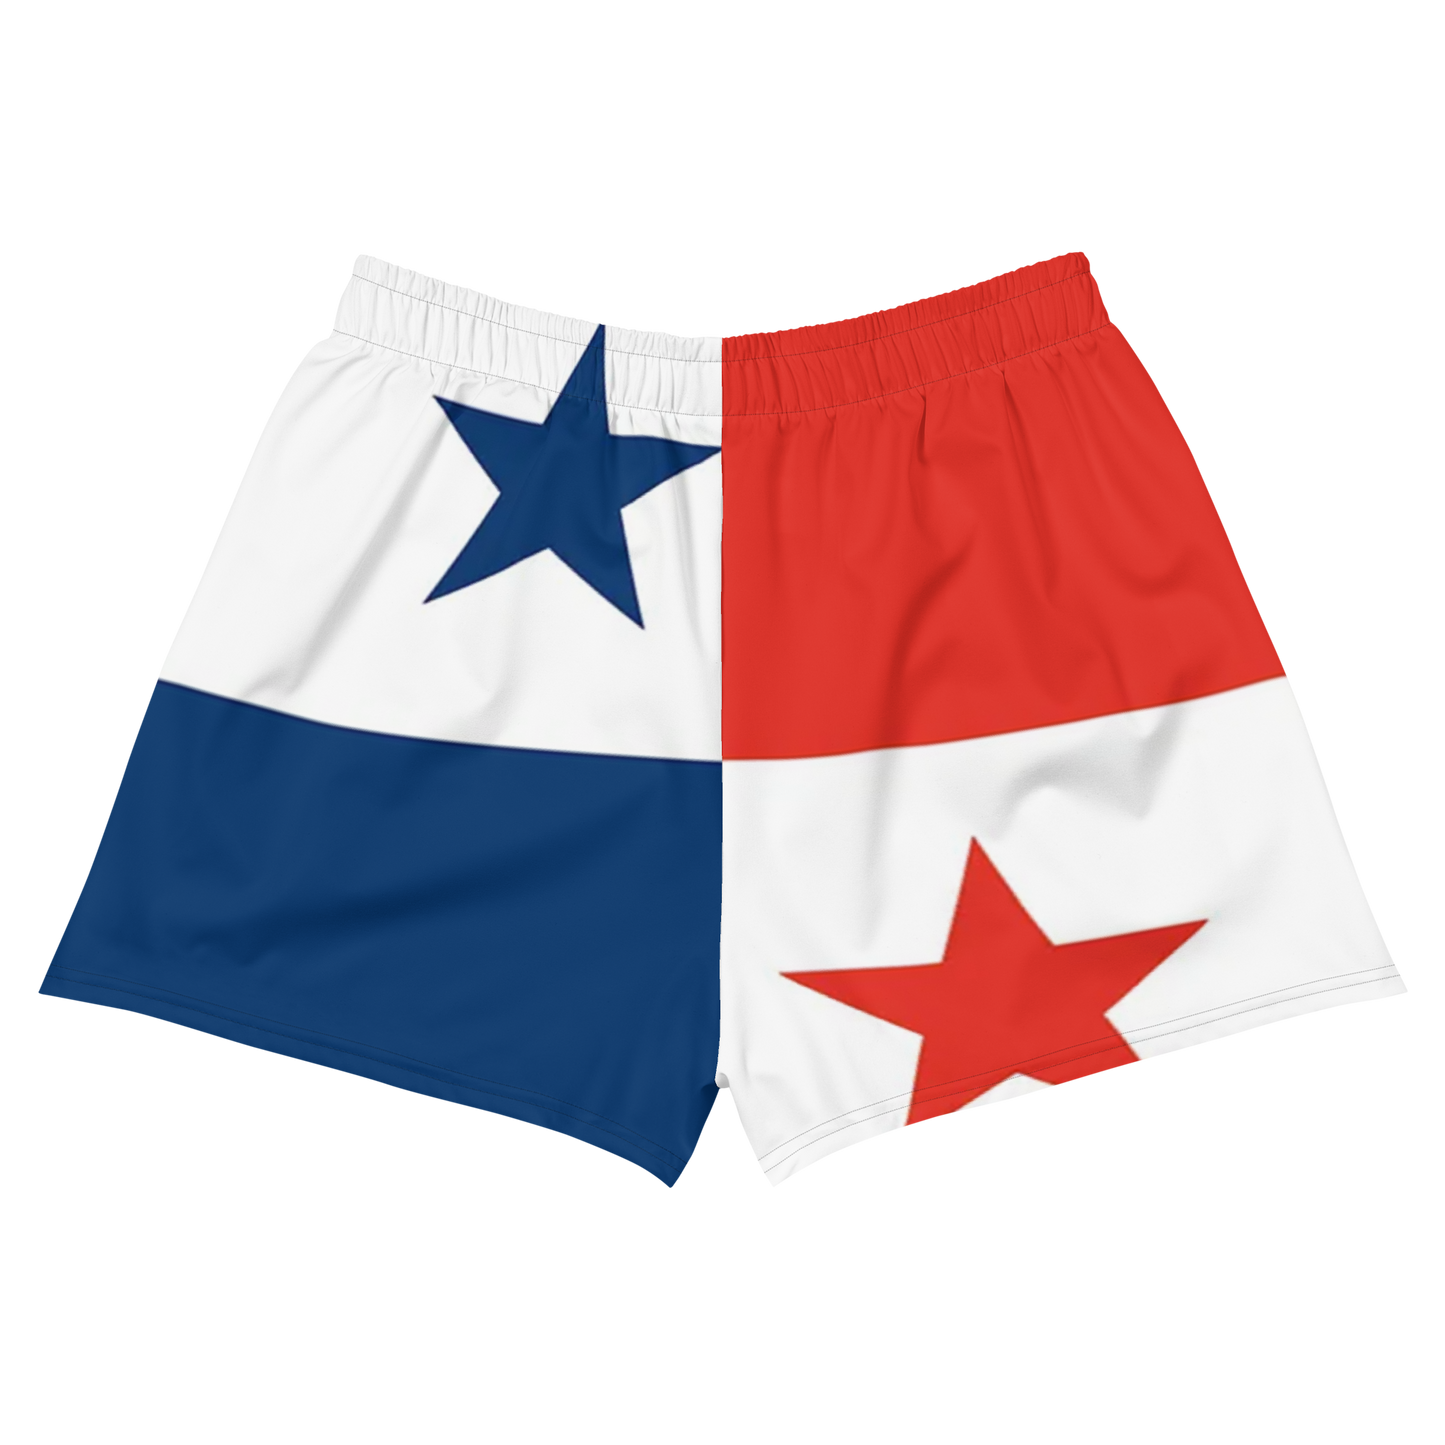 Panama Women’s Athletic Shorts